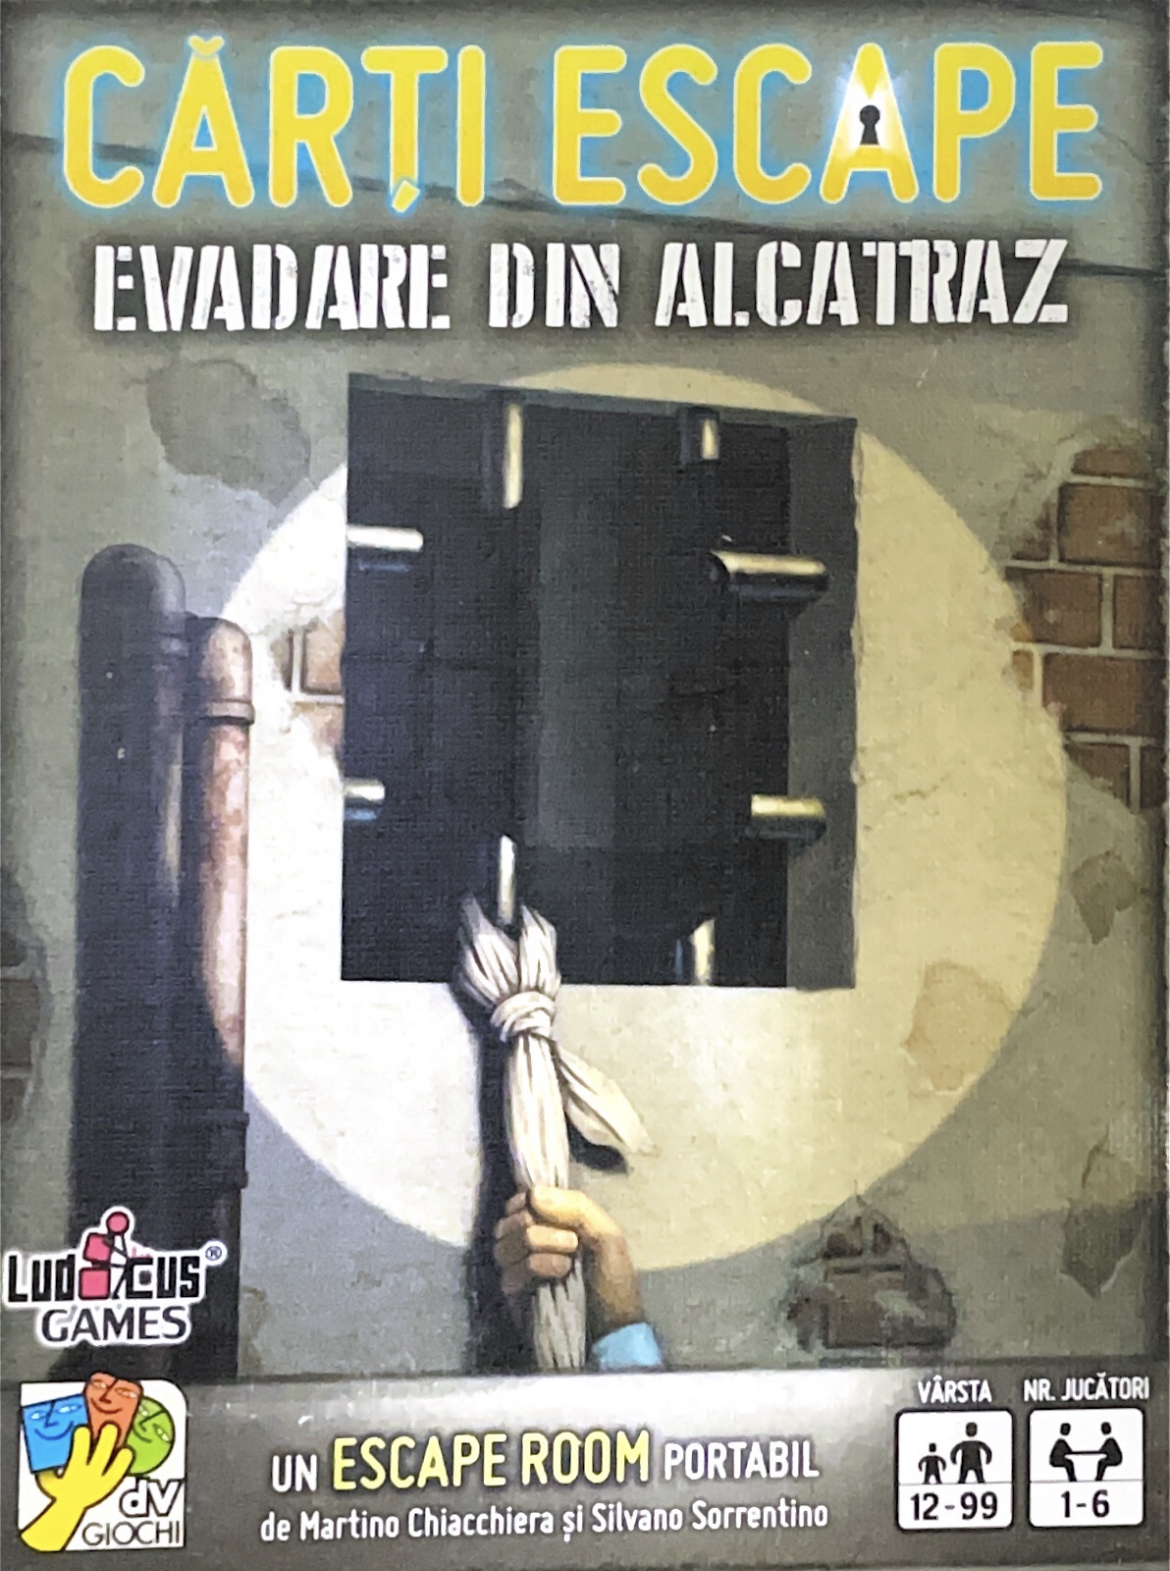 Board Games: Catan; Azul; Activity; Carcassonne și multe altele. Cărți Escape Evadare din Alcatraz